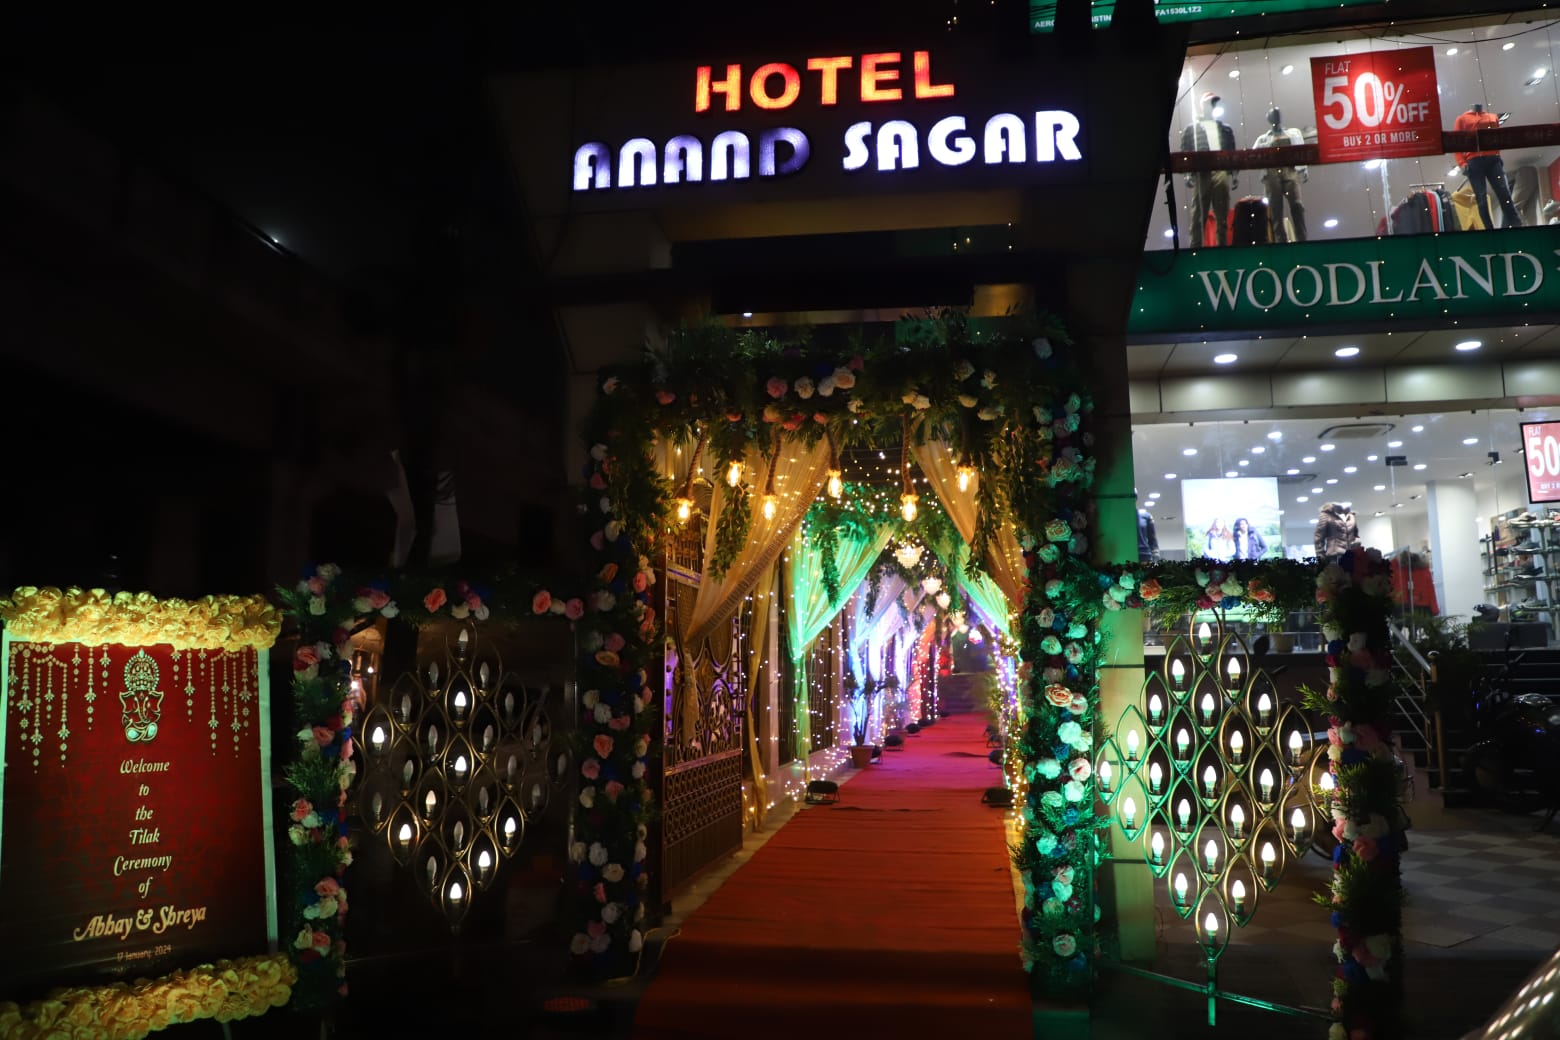 Hotel Anand Sagar